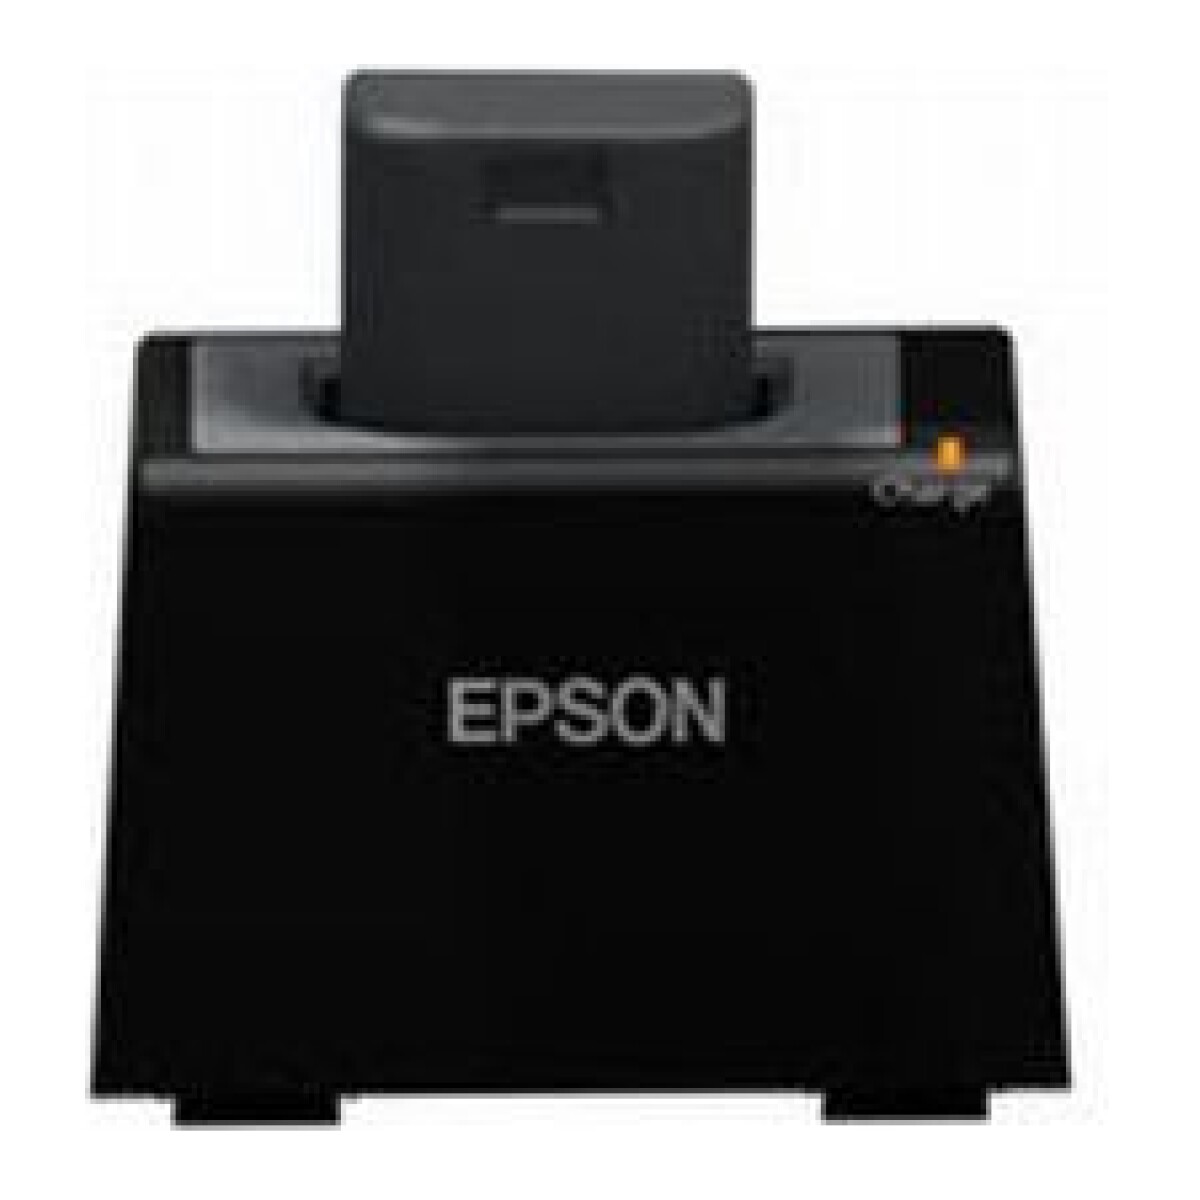 Epson OT-SB60II - Laadstation voor 1 Accu